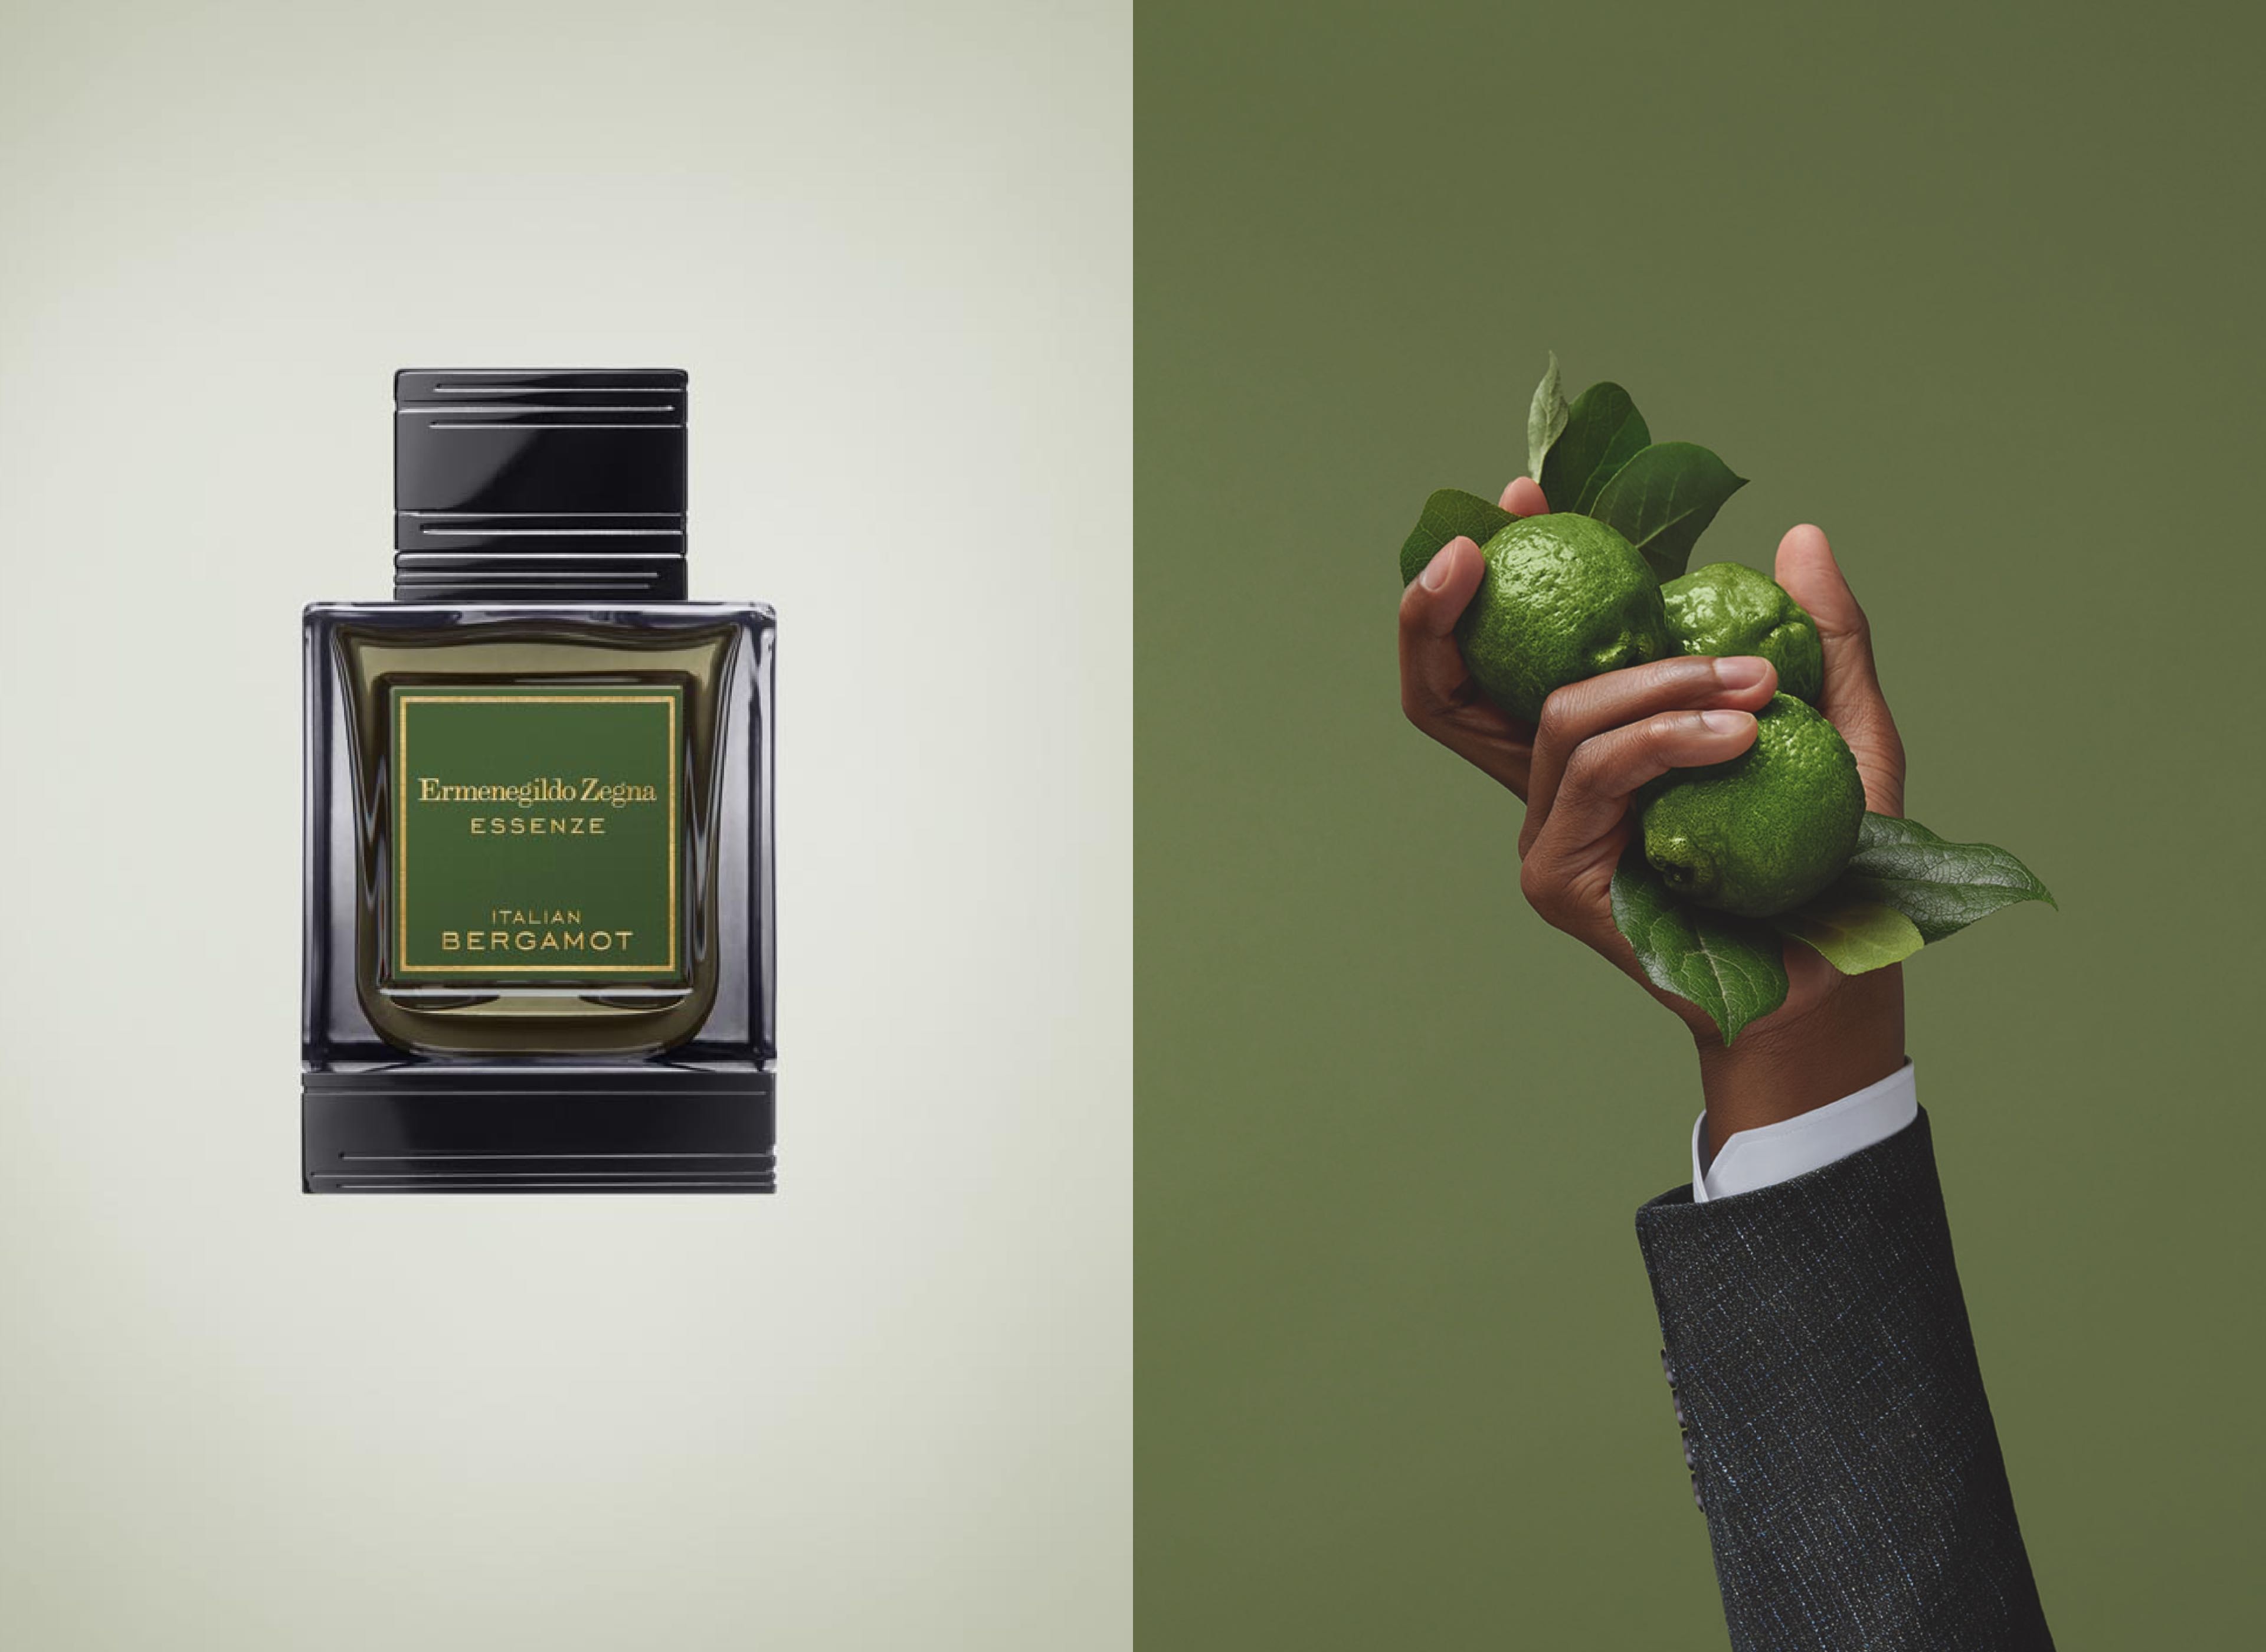 Essenze Eau Parfum Ermenegildo Zegna: natural fragrances for men